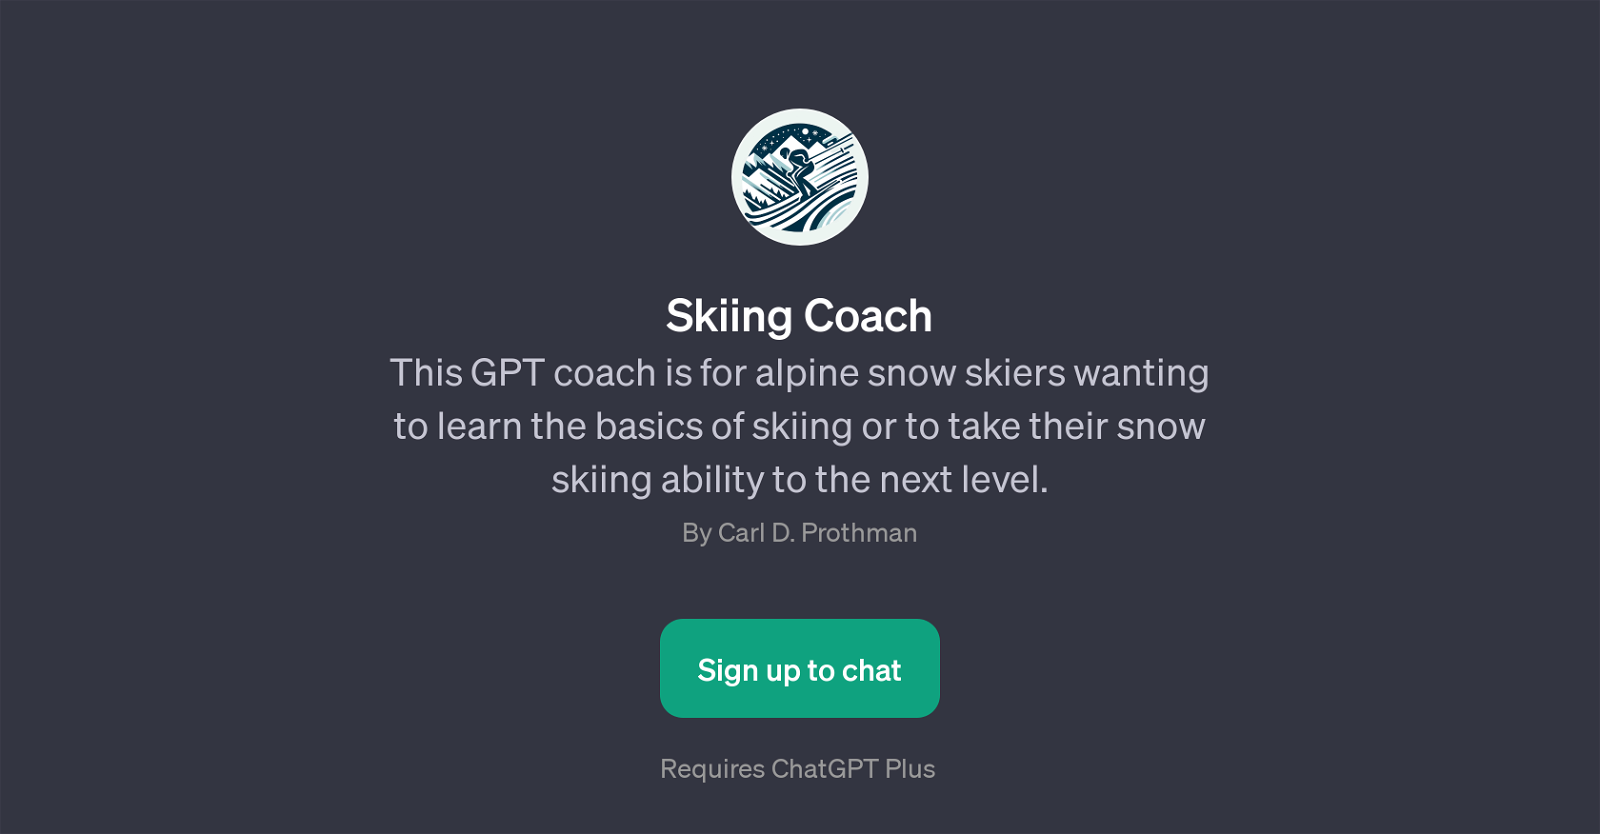 Skiing Coach website